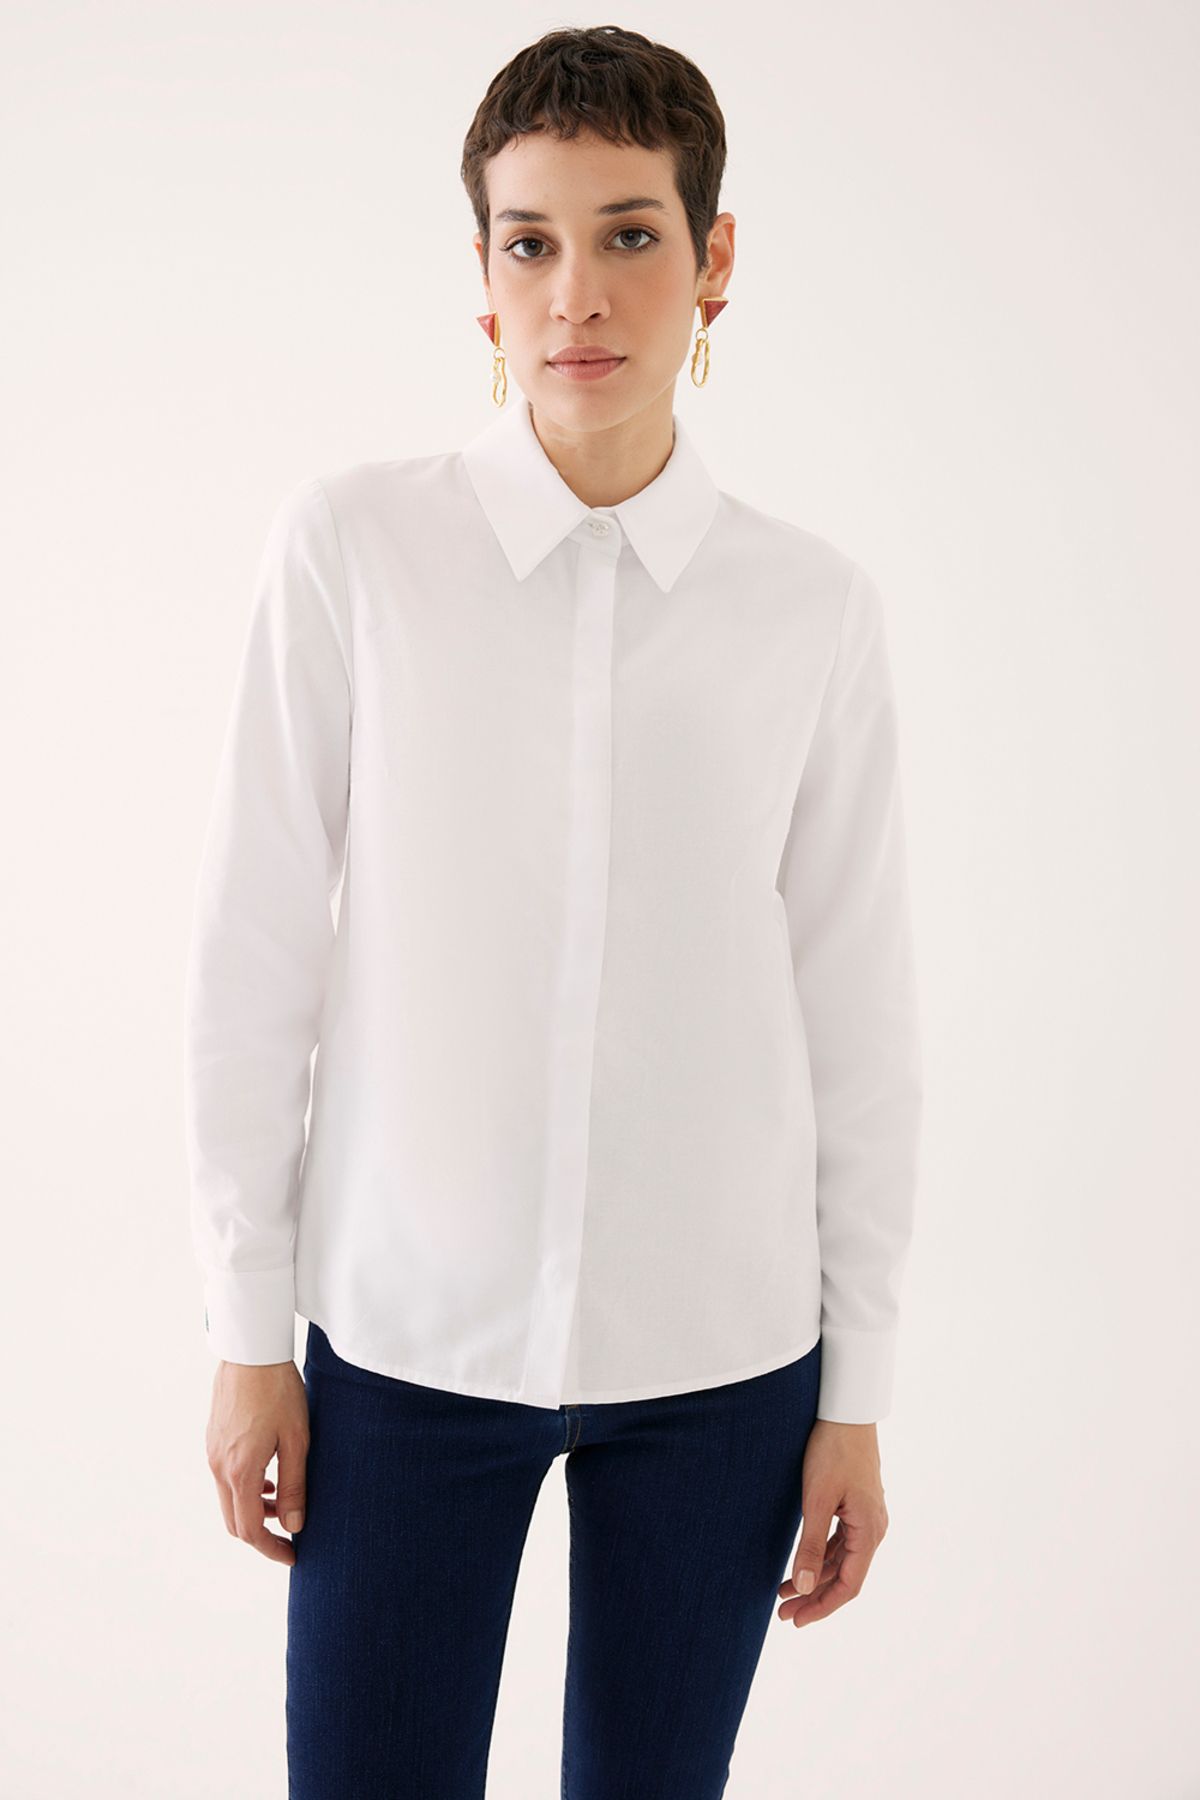 Perspective Kaisa Slim Fit Standart Boy Takma Kol Gömlek Yaka Beyaz Renk Kadın Gömlek